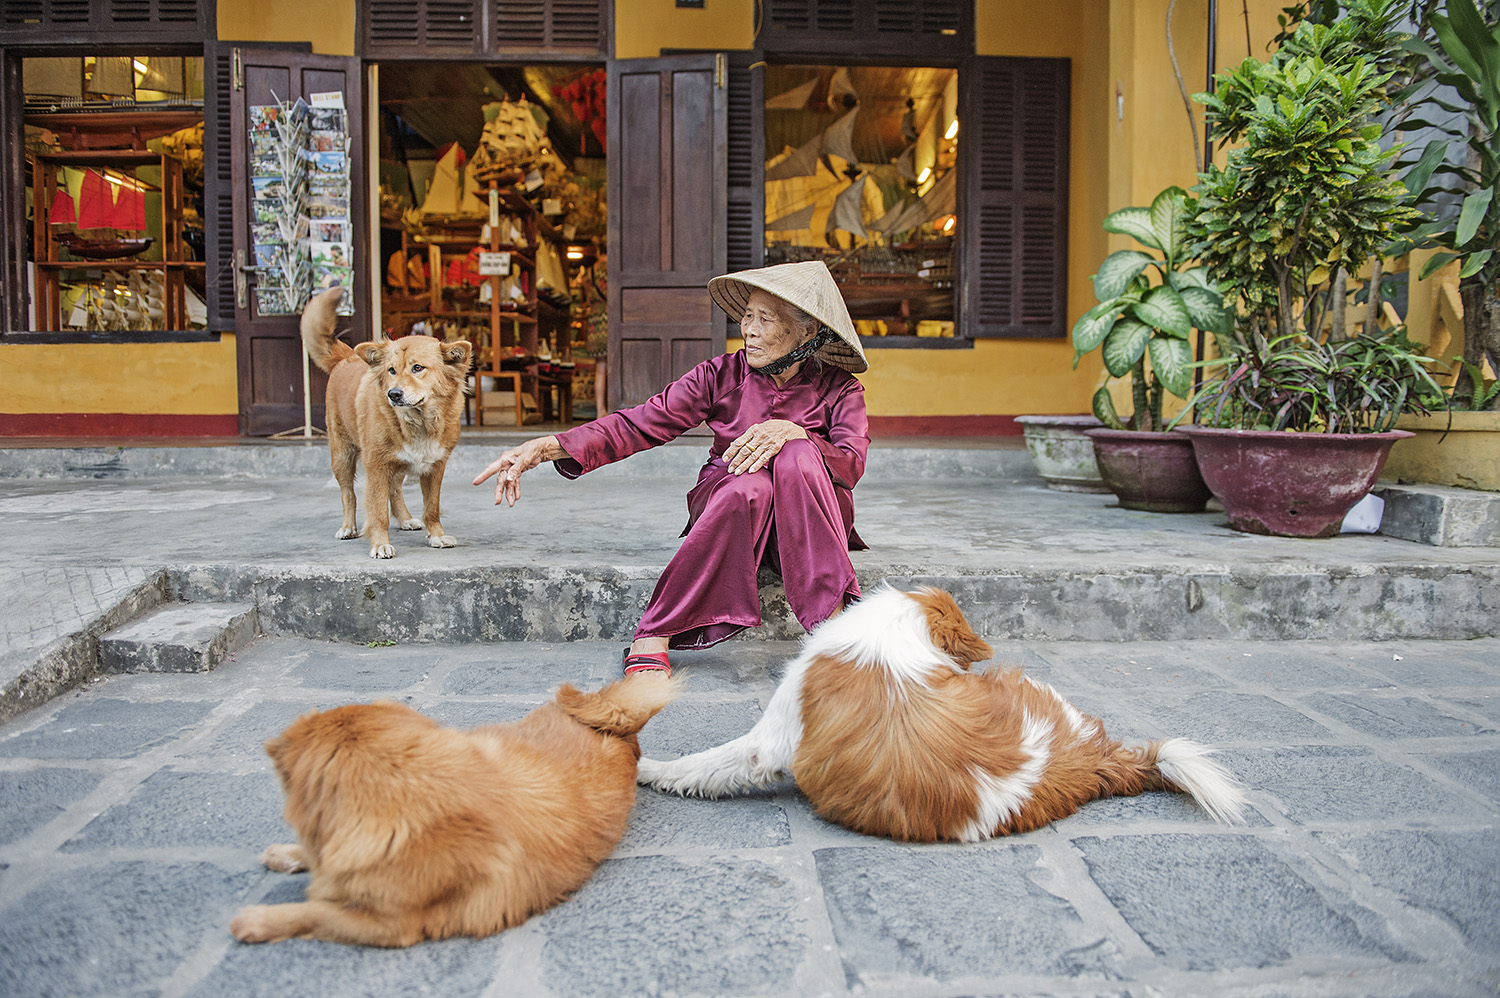 Travel images, Vietnam